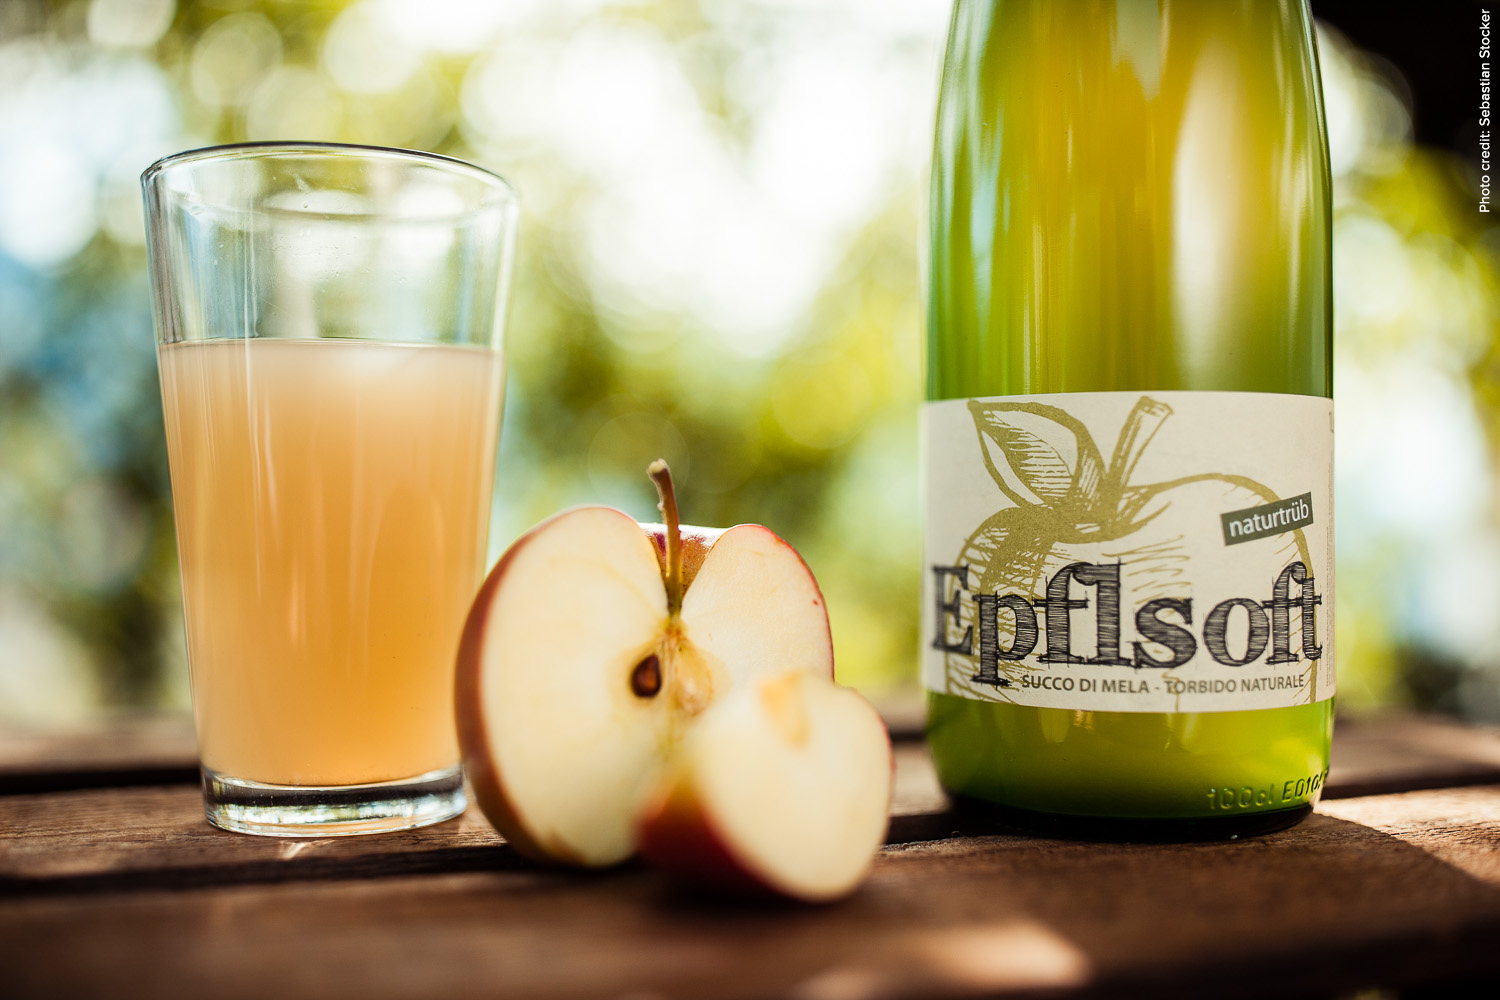 Apfelsaft vom Bauern naturtrüb 1 Liter Flasche - Epflsoft | Tee ...